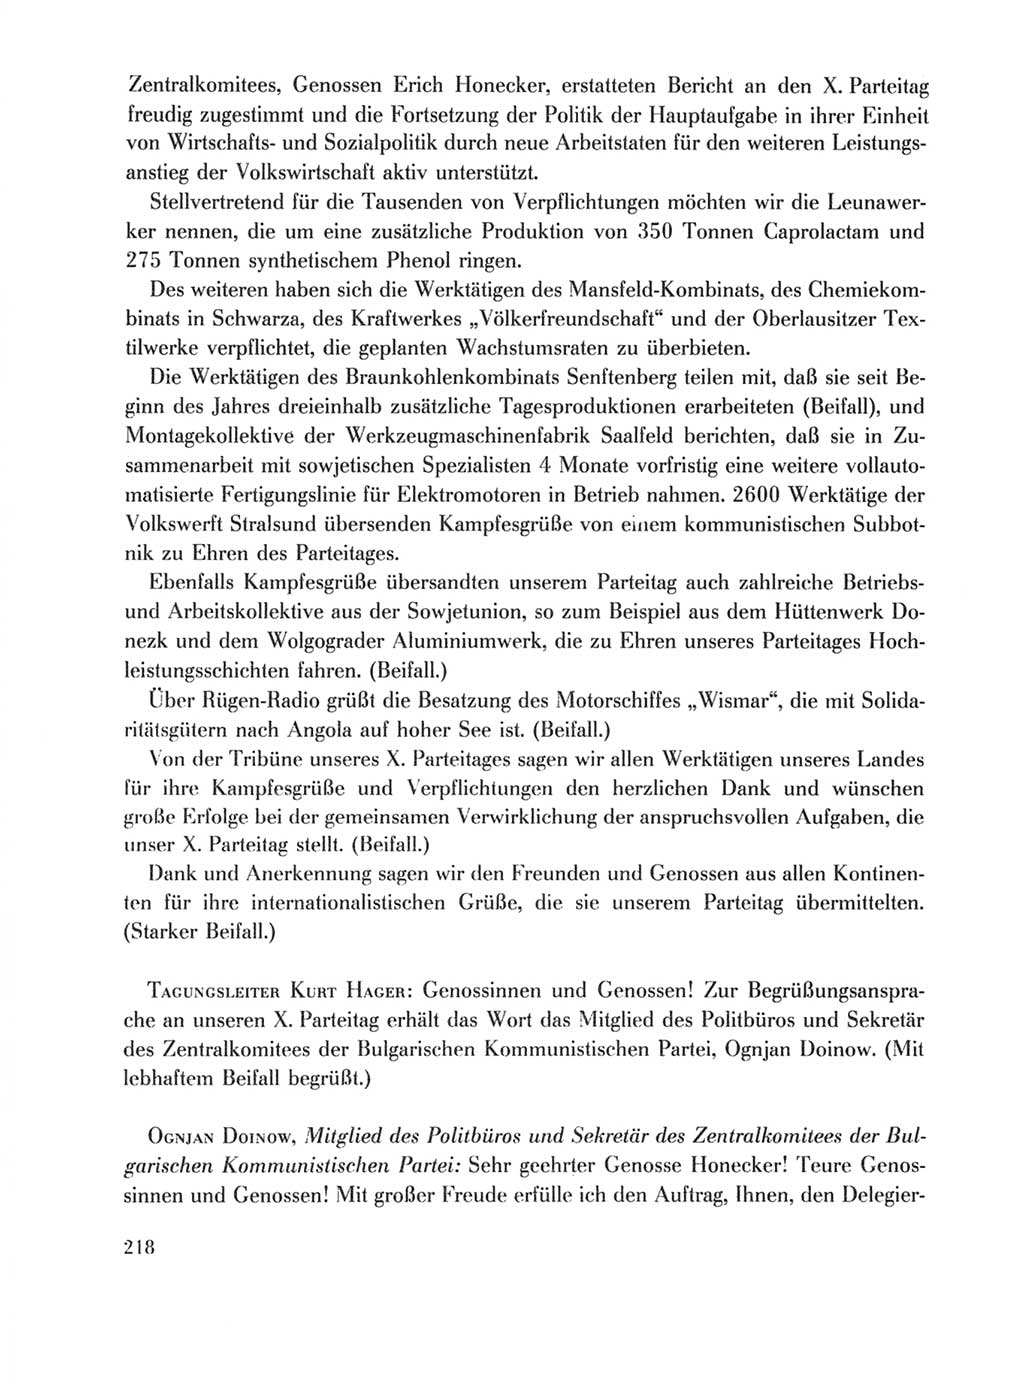 Protokoll der Verhandlungen des Ⅹ. Parteitages der Sozialistischen Einheitspartei Deutschlands (SED) [Deutsche Demokratische Republik (DDR)] 1981, Band 1, Seite 218 (Prot. Verh. Ⅹ. PT SED DDR 1981, Bd. 1, S. 218)